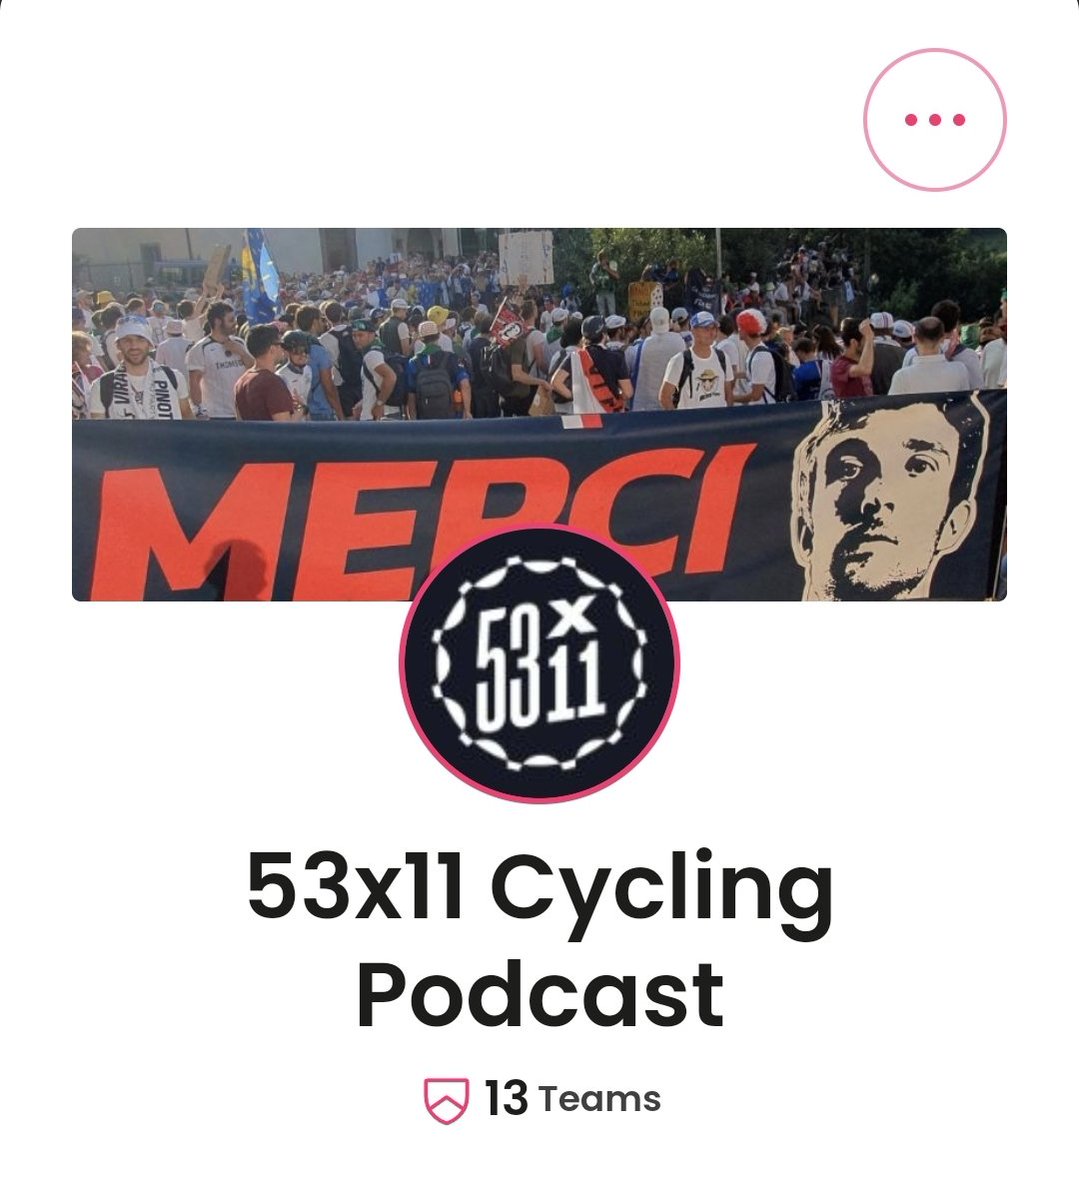 Qui per dirvi che dopo esservi registrati al FantaGiro potete unirvi alla nostra lega 53x11 Cycling Podcast!